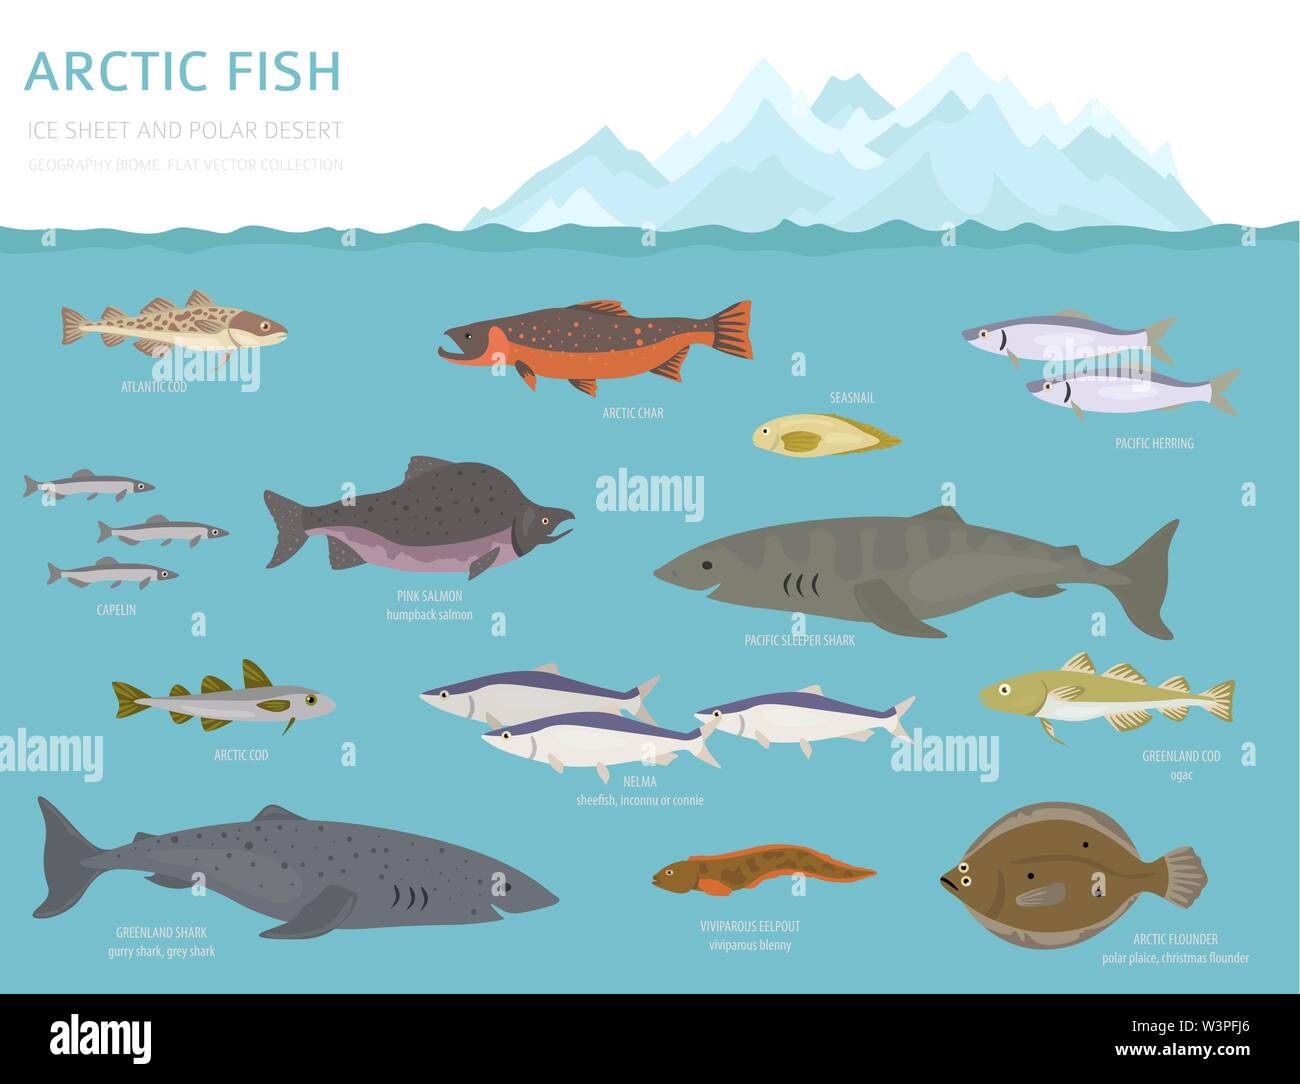 Eis und polaren Wüste biome. Terrestrischen Ökosystem Weltkarte. Arktische Tiere, Vögel, Fische und Pflanzen Infografik Design. Vector Illustration Stock Vektor